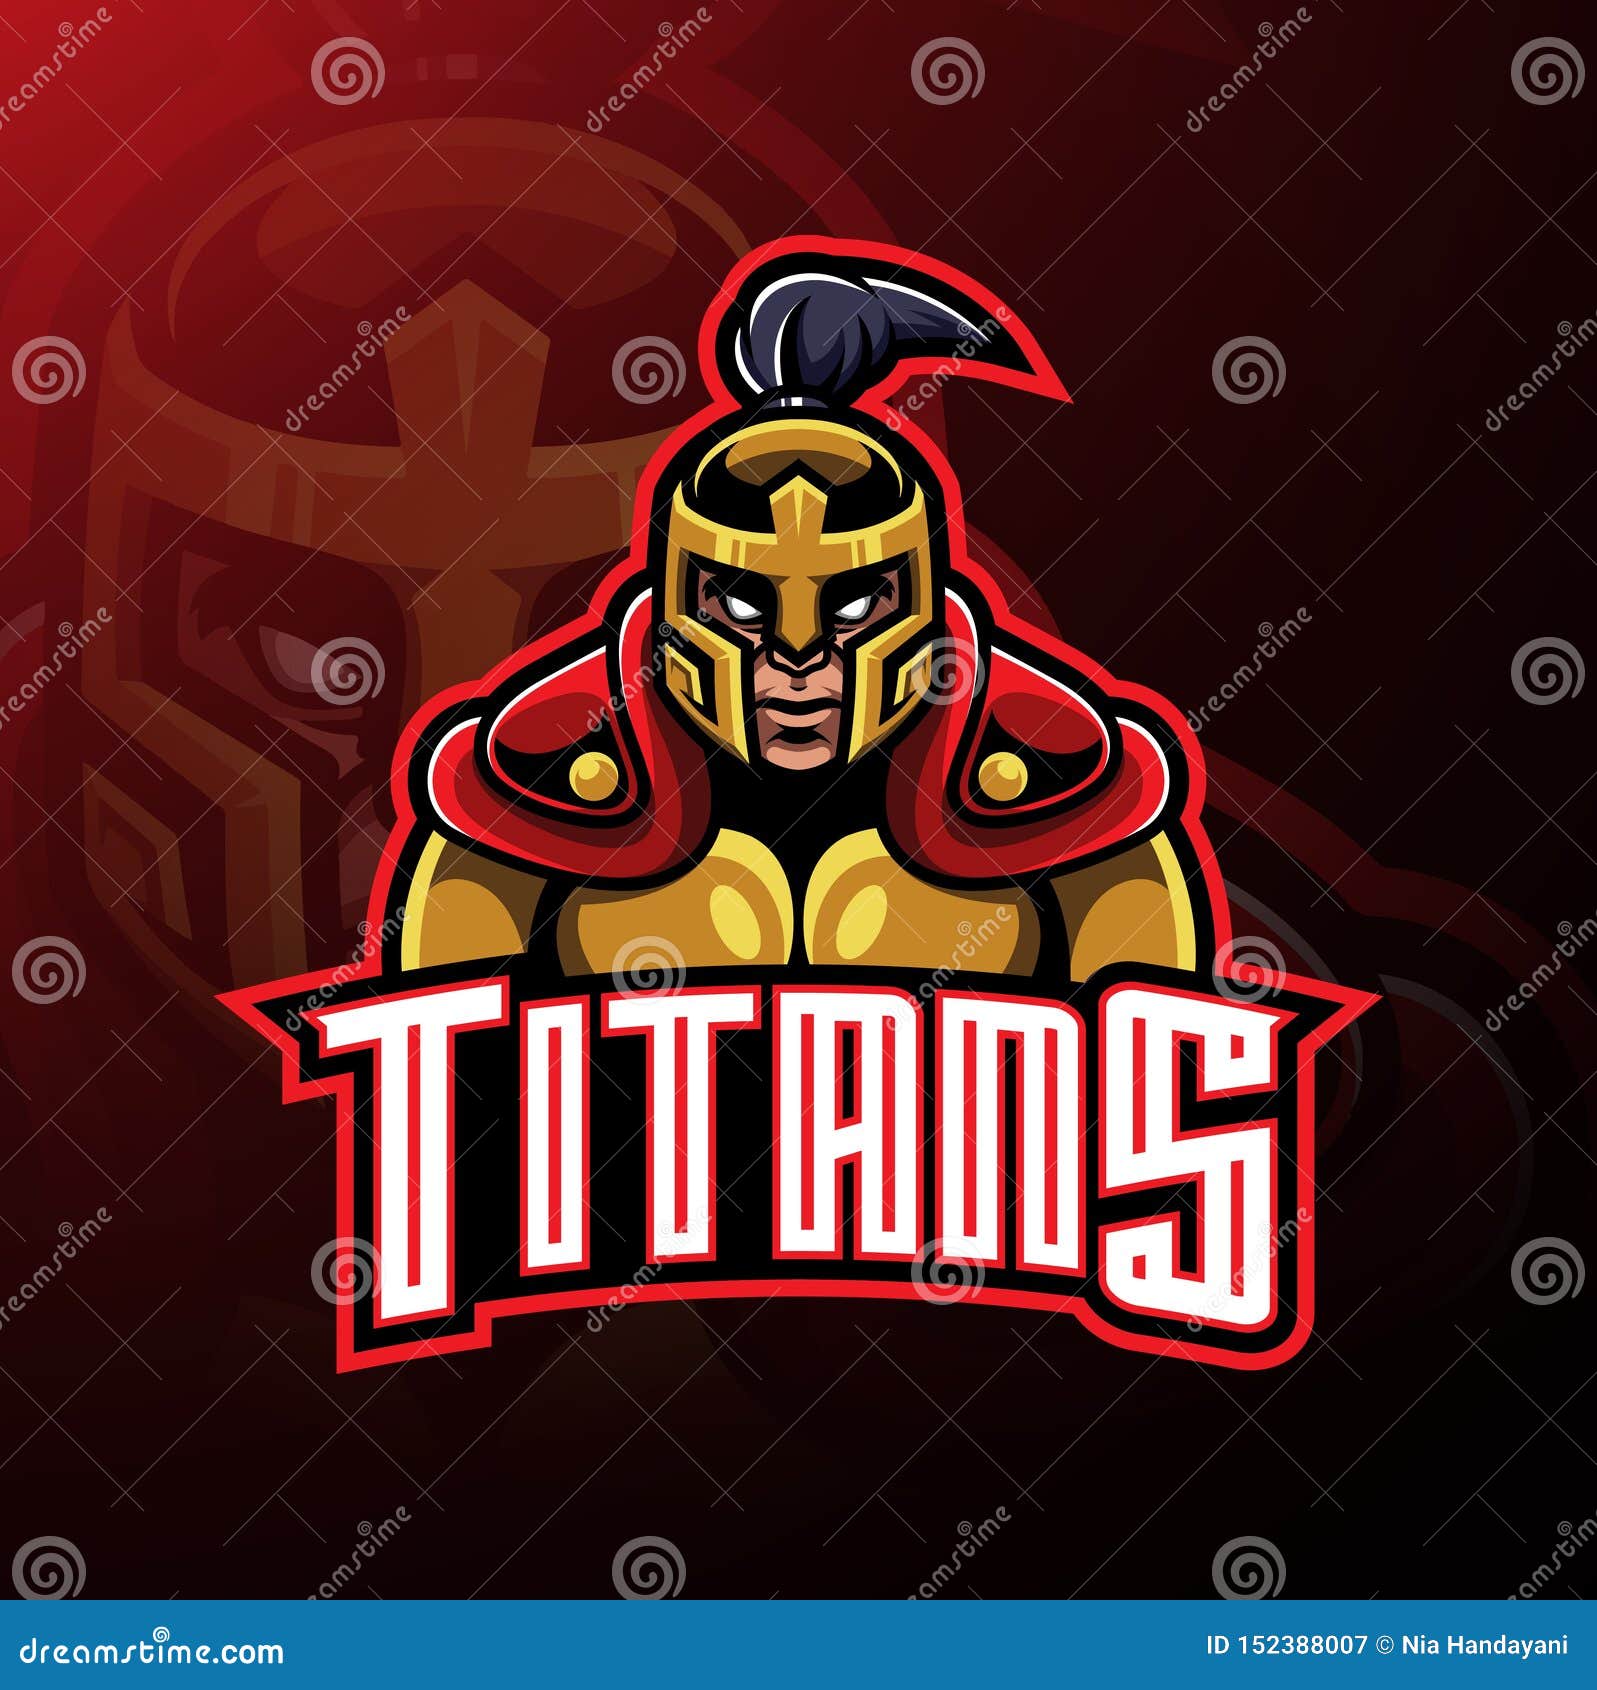 titans warrior mascot logo 